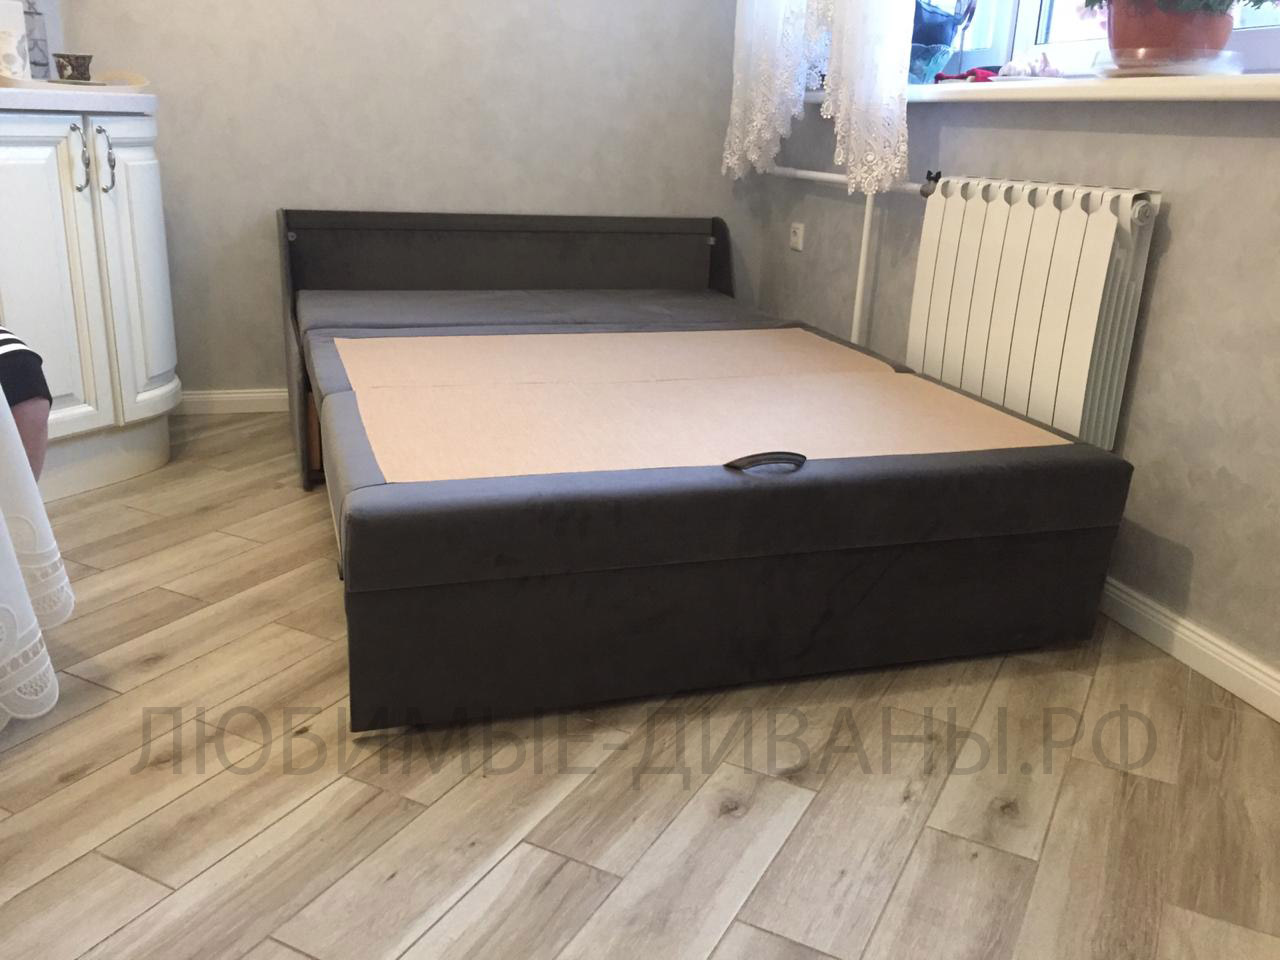 Малогабаритный диван Танго-4 Д-125 с каретной стяжкой для небольших комнат и кухни